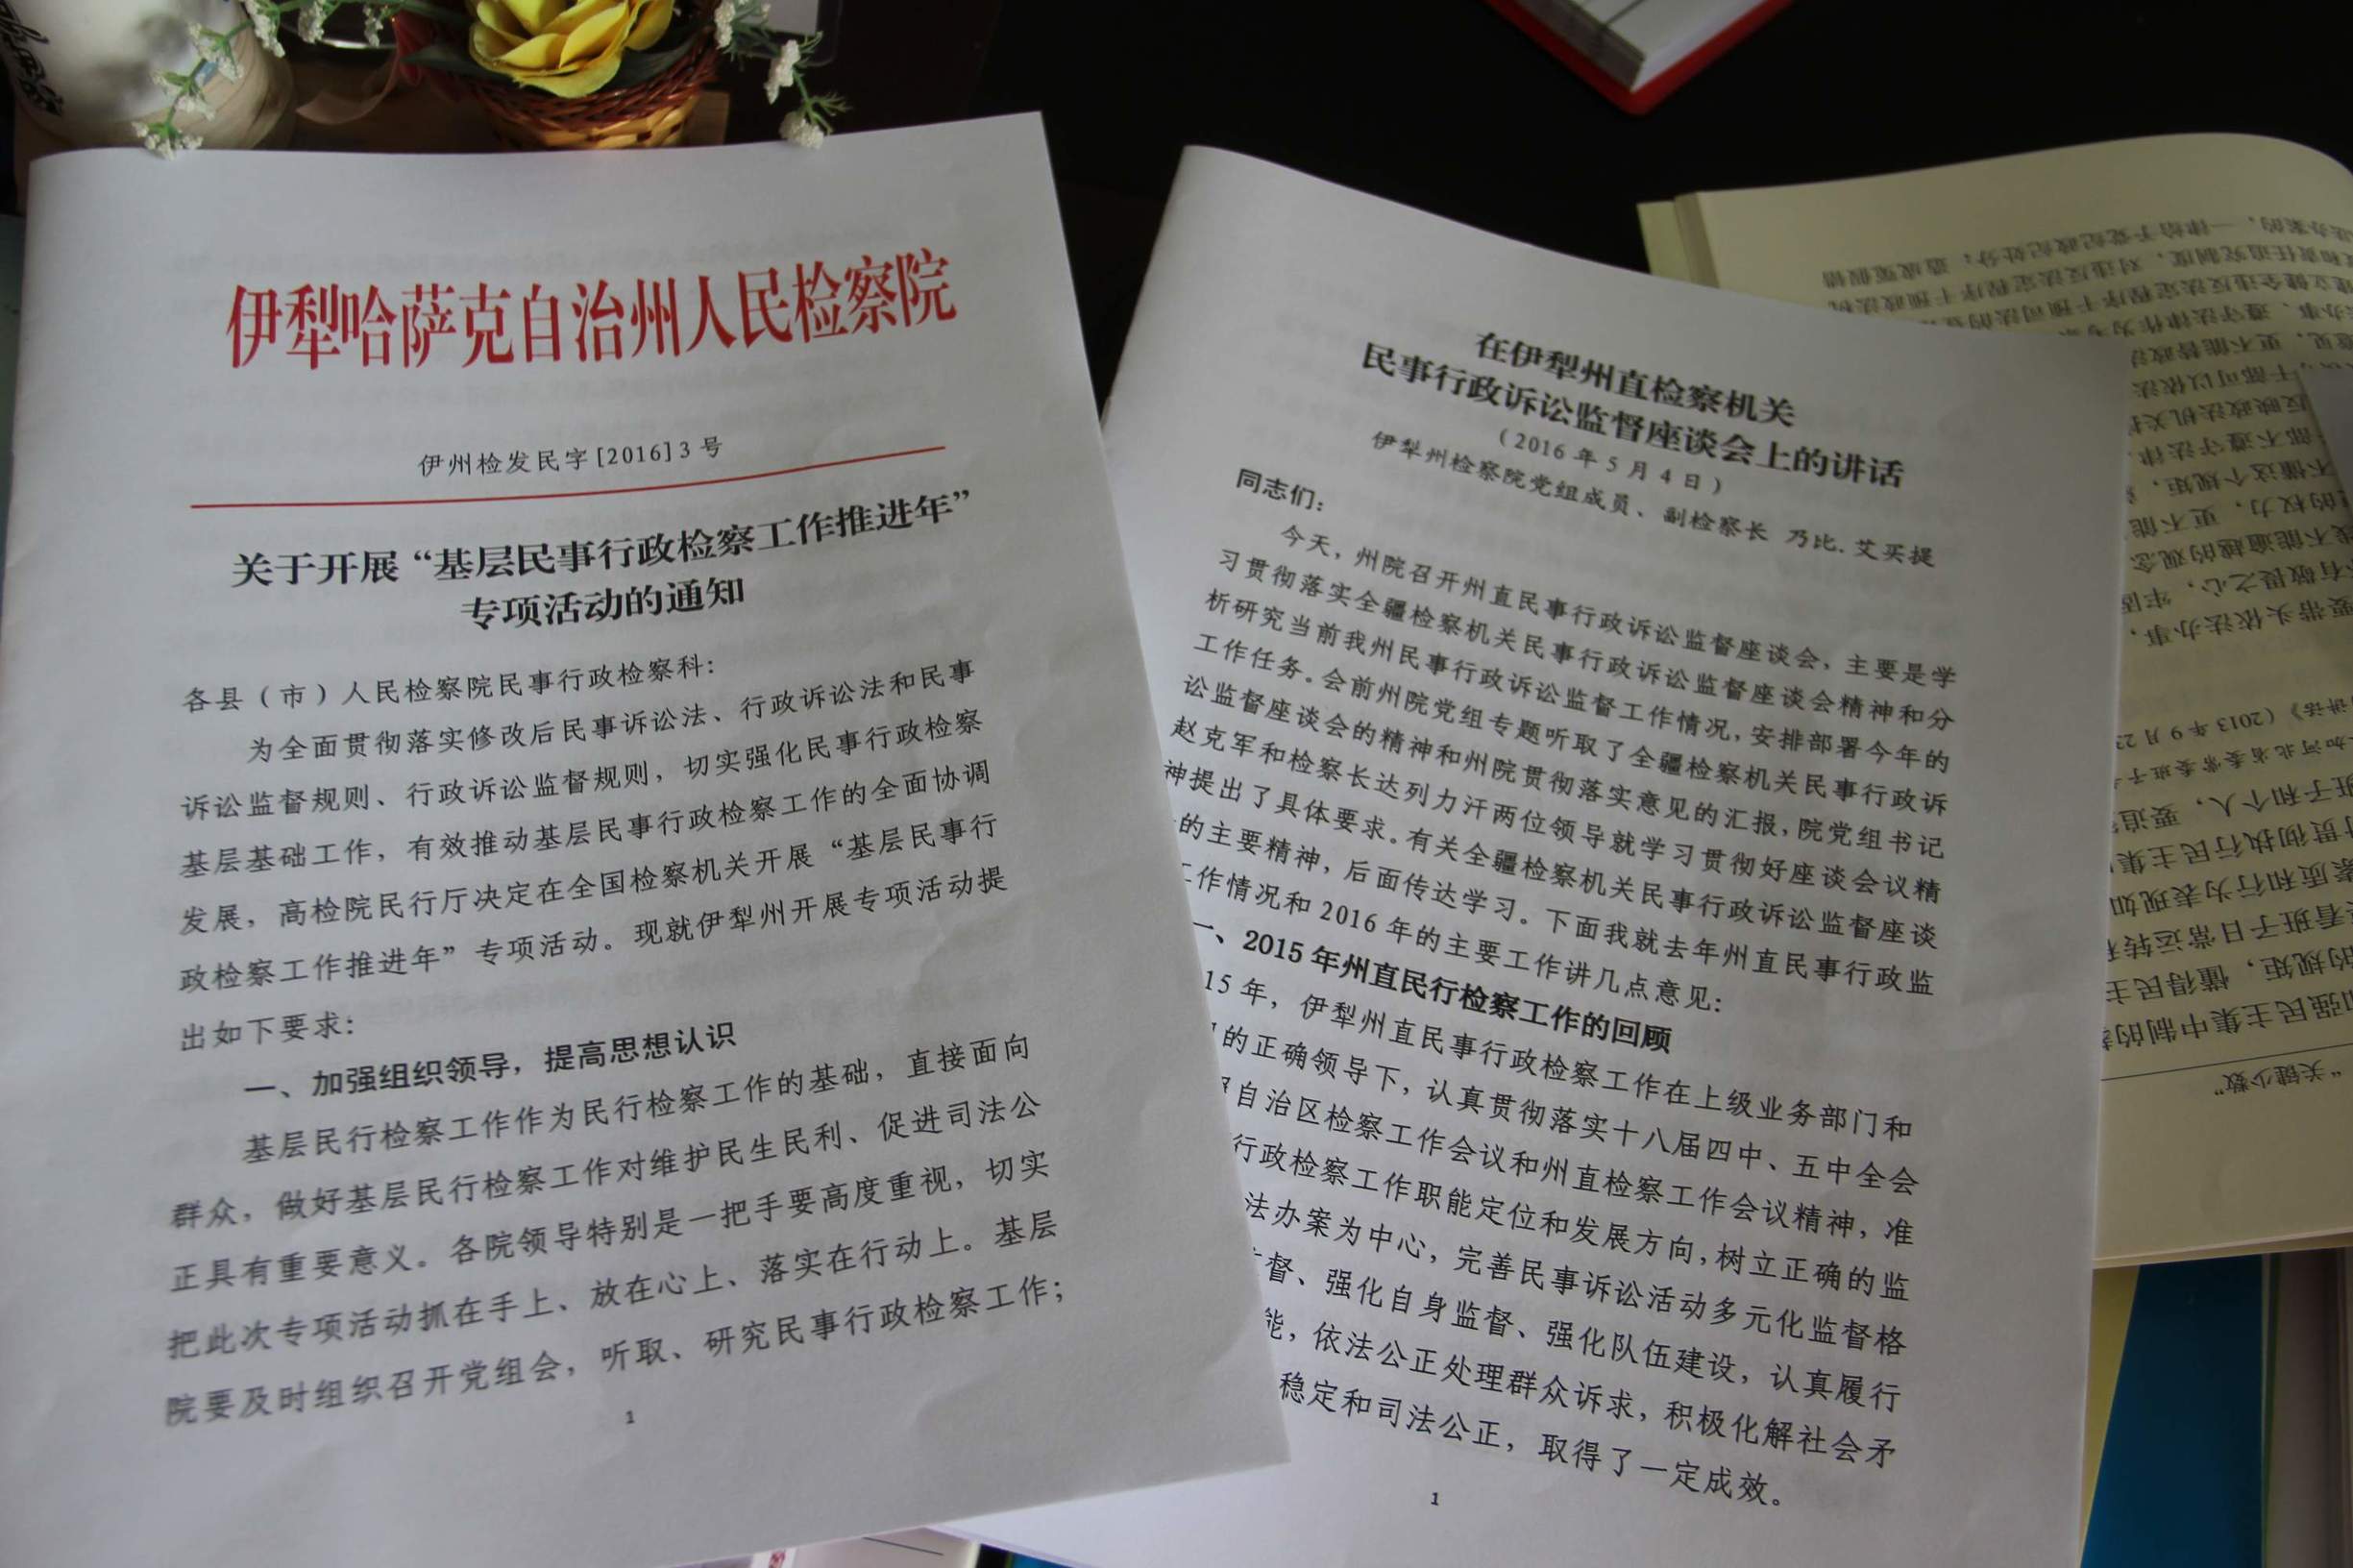 新源县人民检察院民事行政检察科 积极参加伊犁州直案件评查取得